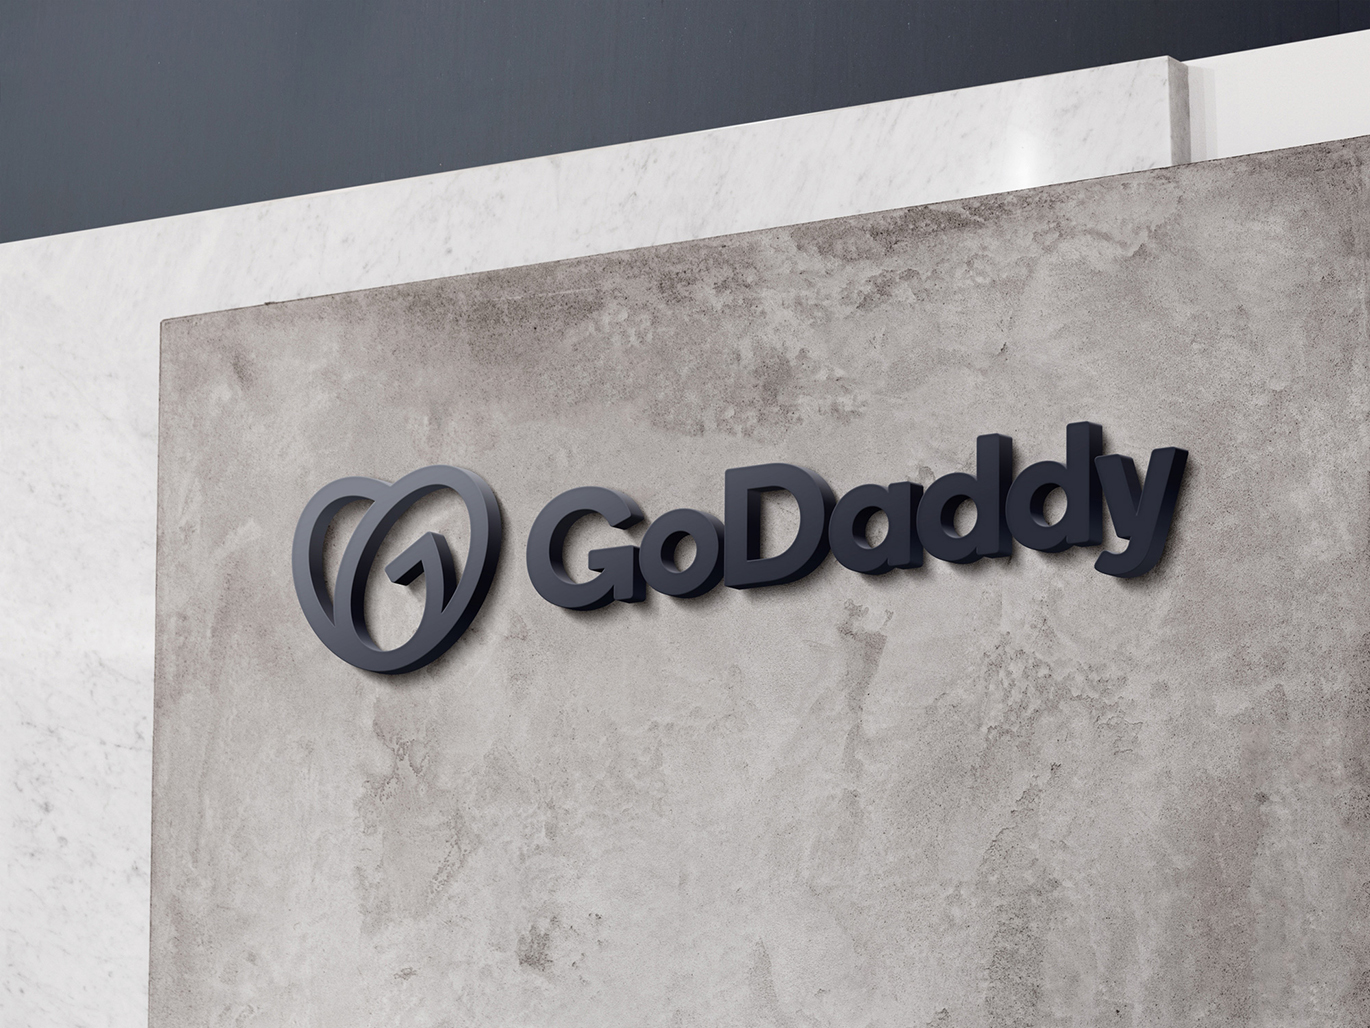 域名注册商和网络托管公司GoDaddy启用全新的品牌VI设计-深圳VI设计12